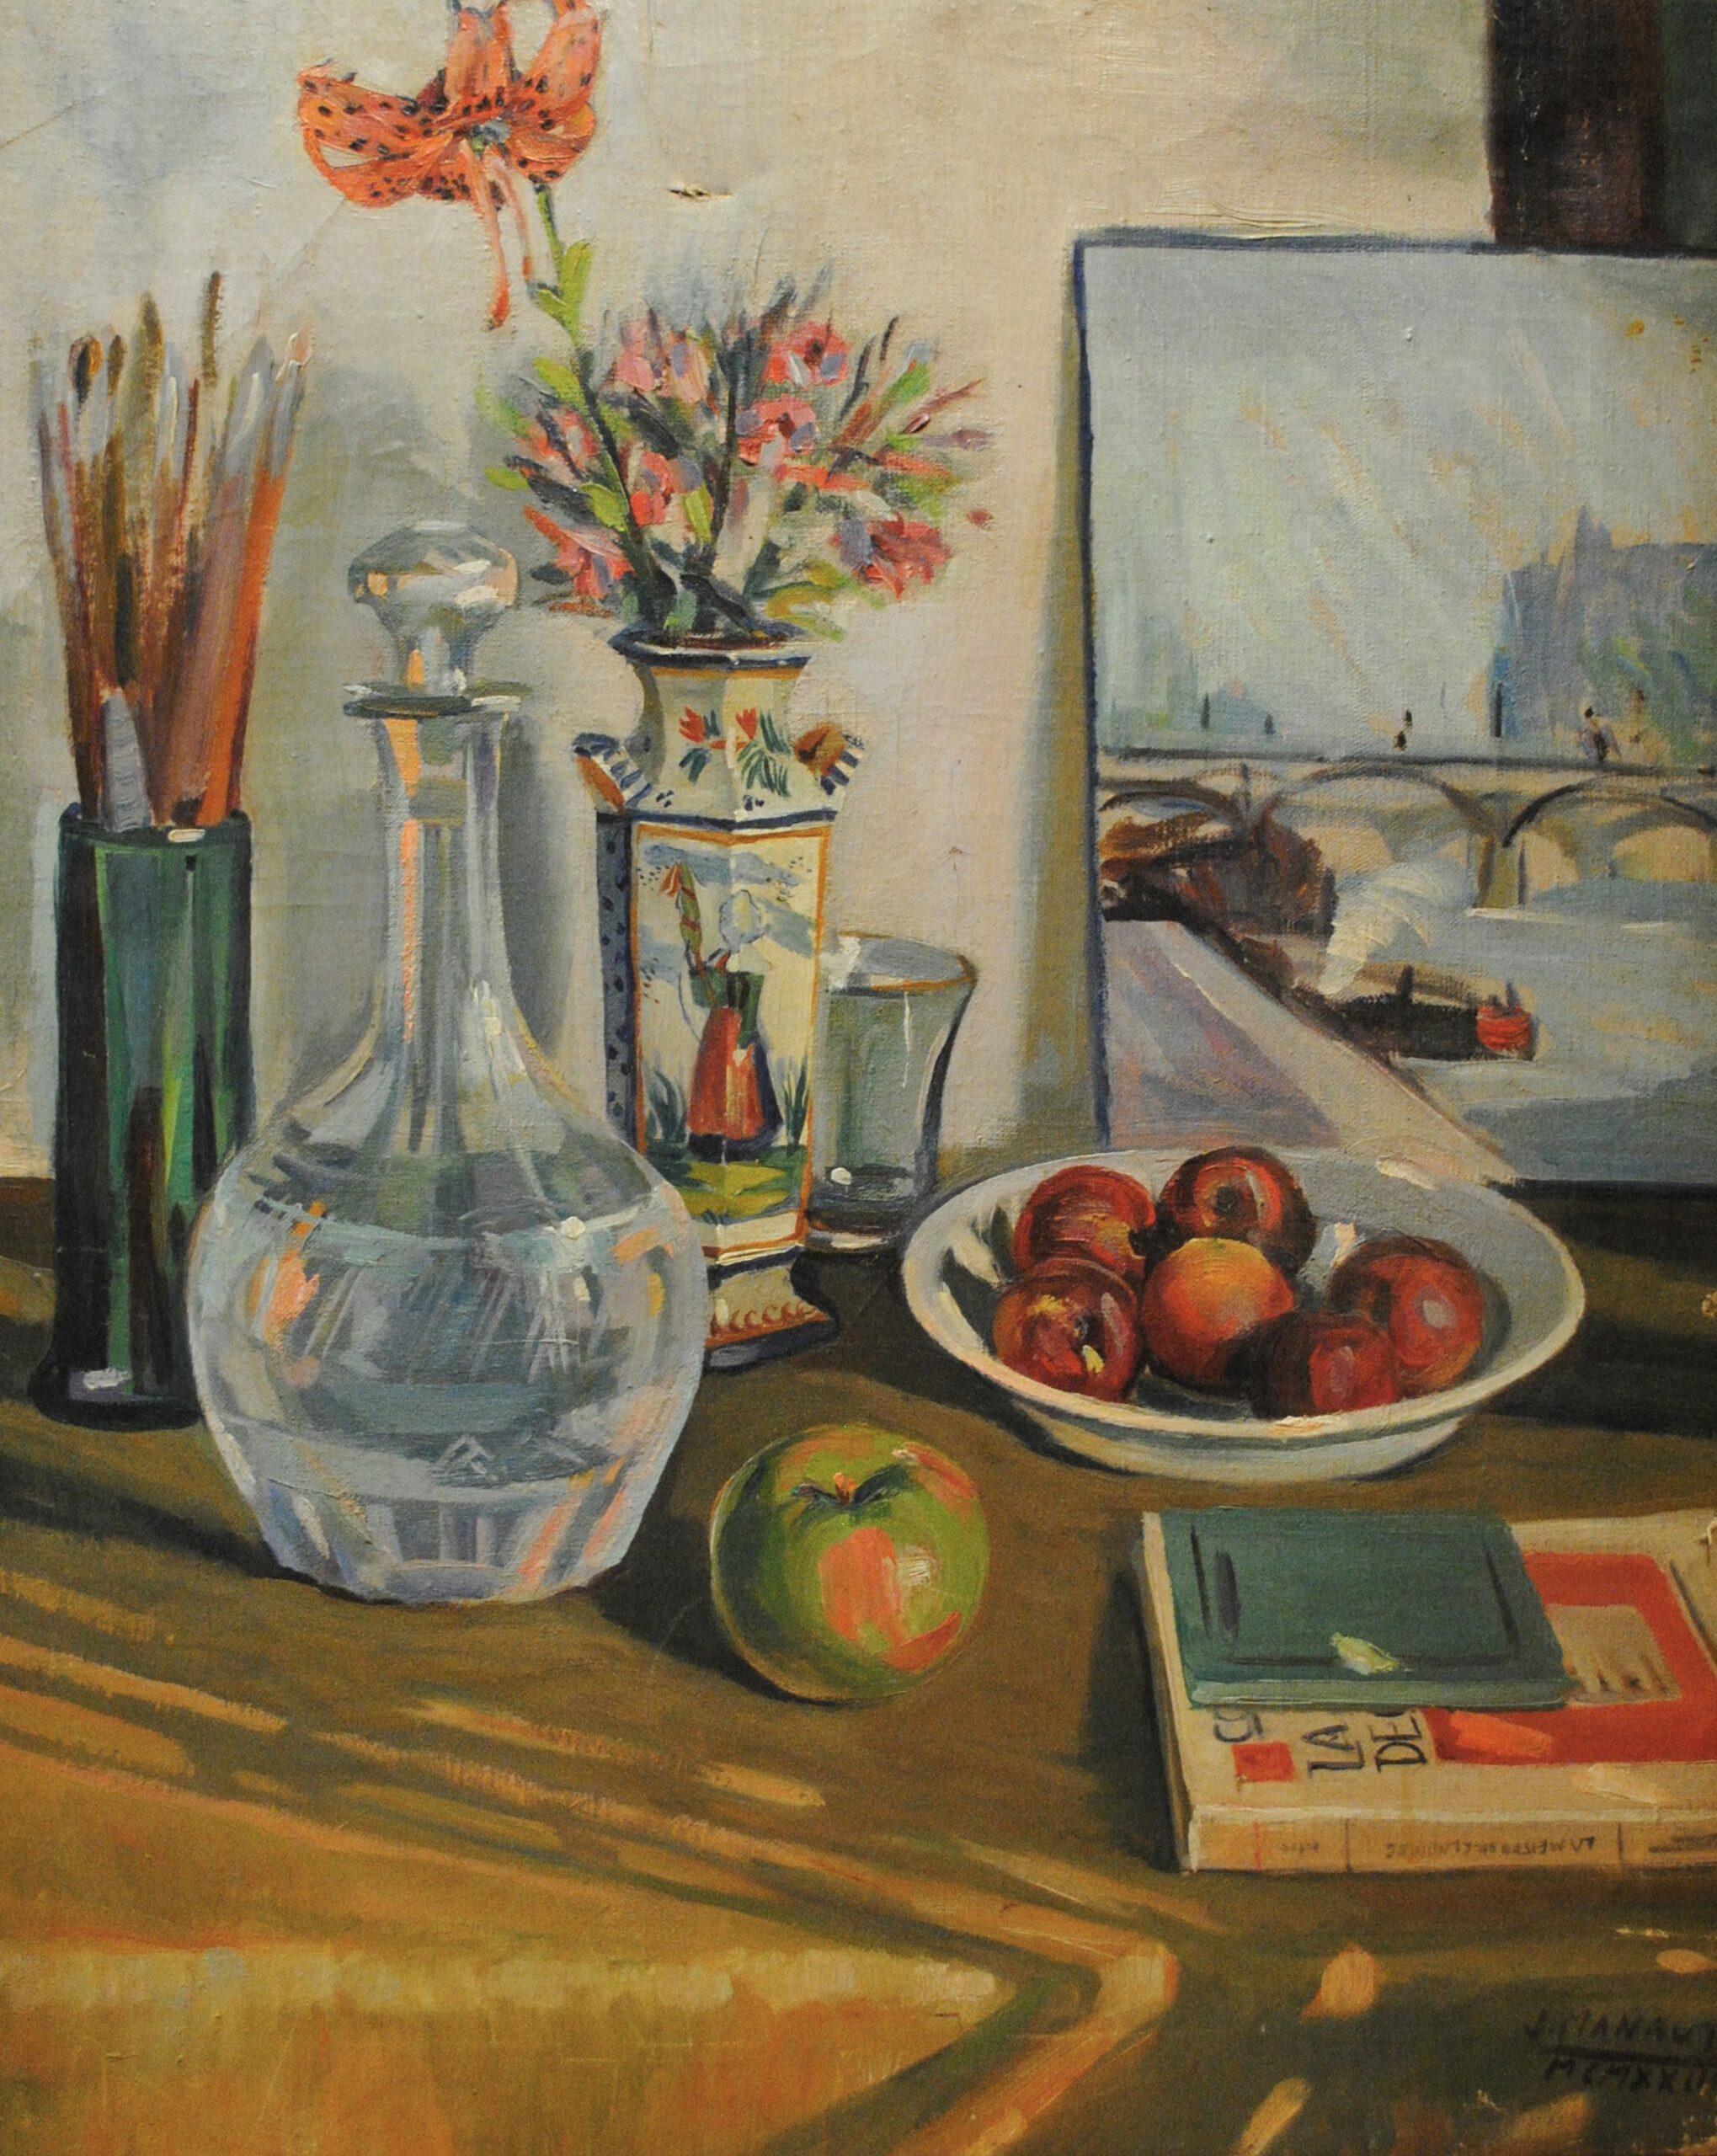 Pintura de José Manaut titulada Frasco y flores, 1923. Óleo sobre lienzo.